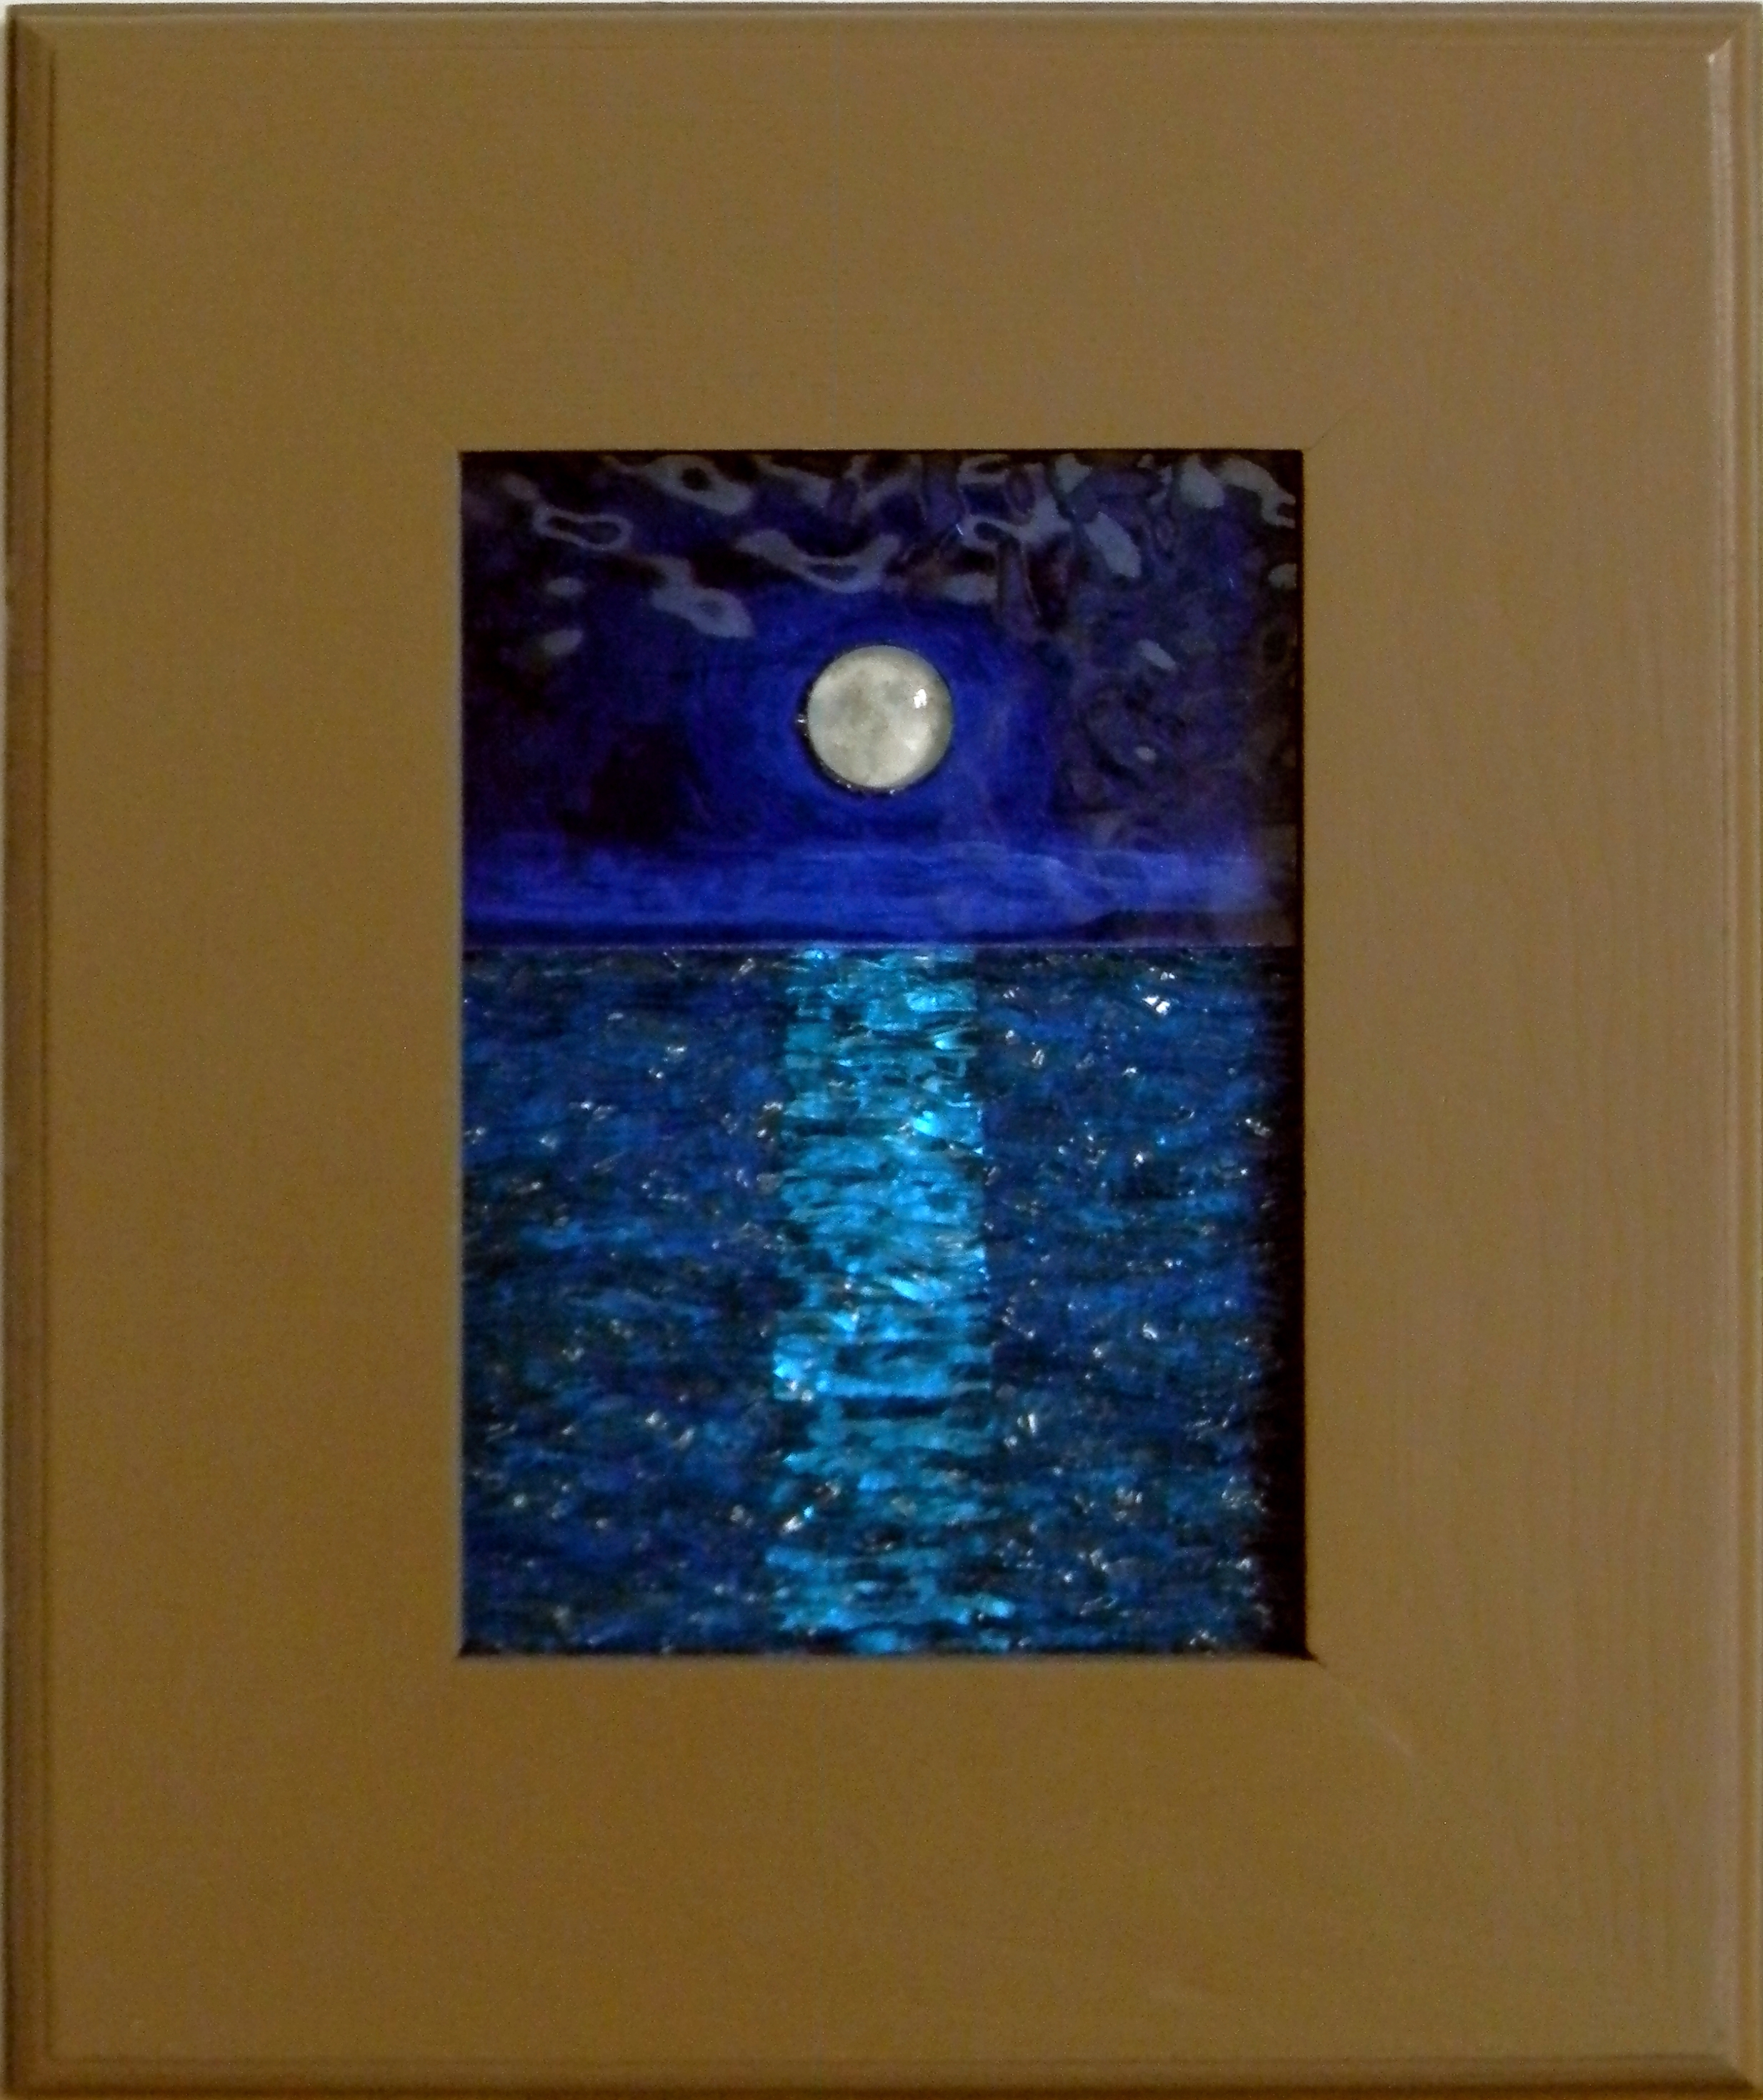 "Moonlight"
by Nataliya Guchenia
Size - 7"H X 5"W
$175.00